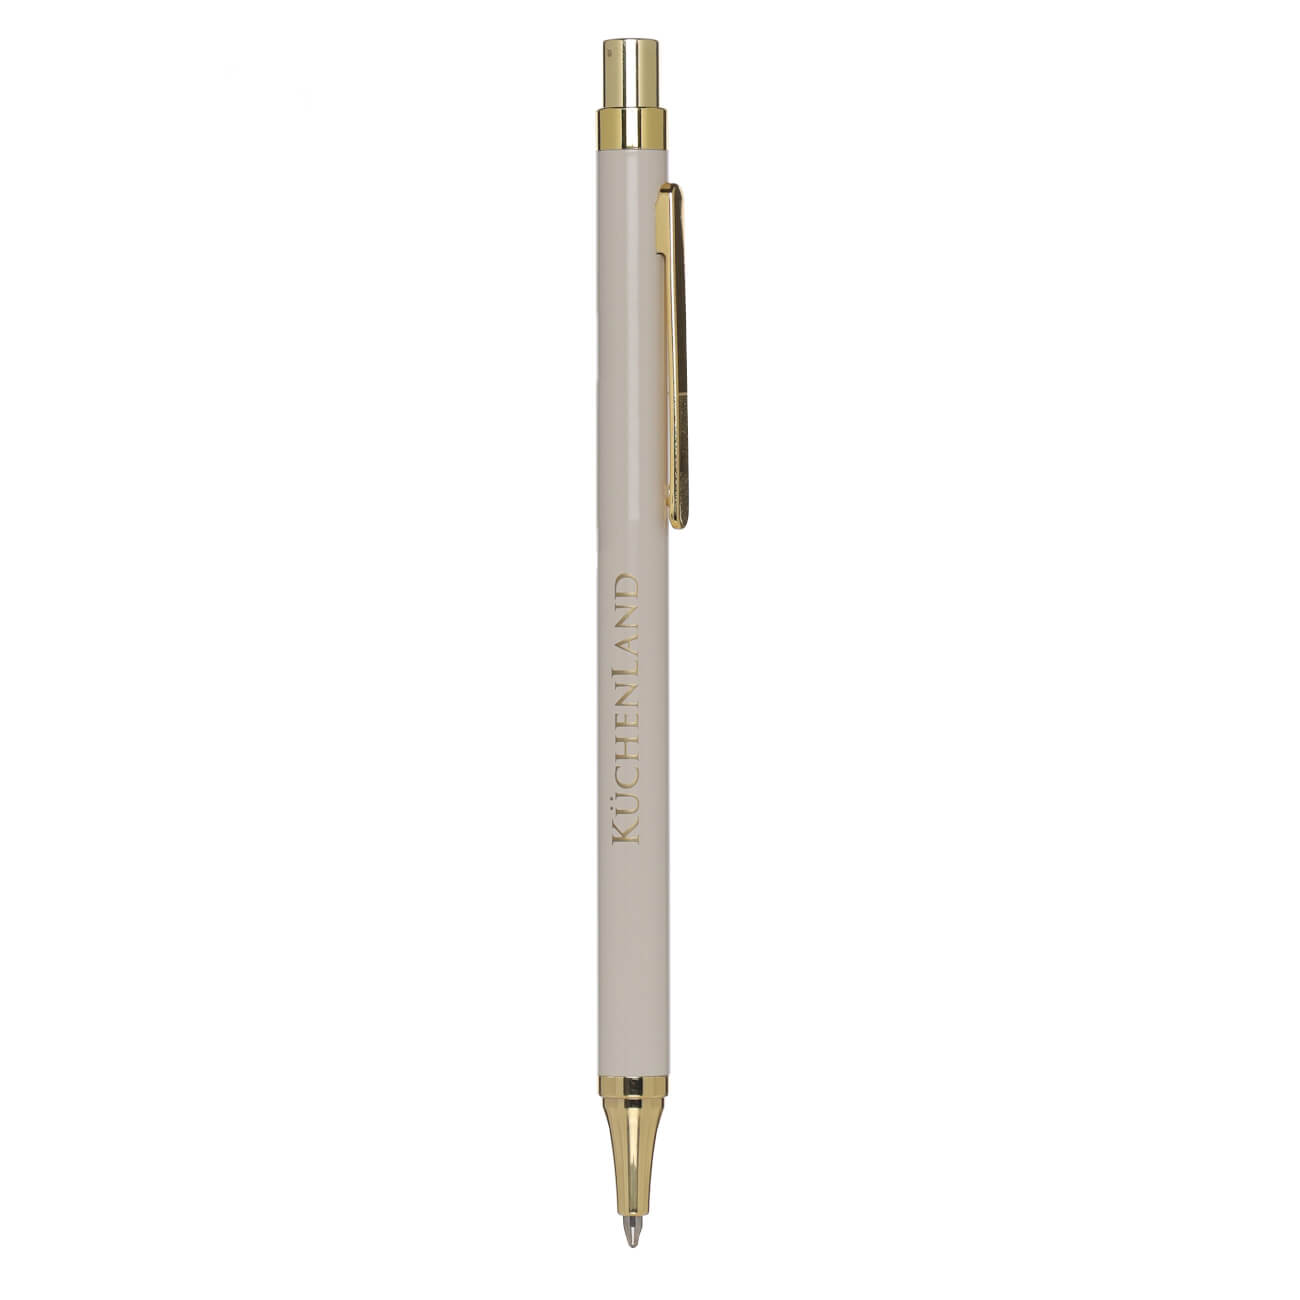 Ручка шариковая, 14 см, металл/пластик, бежевая, Eclipse ручка закладка